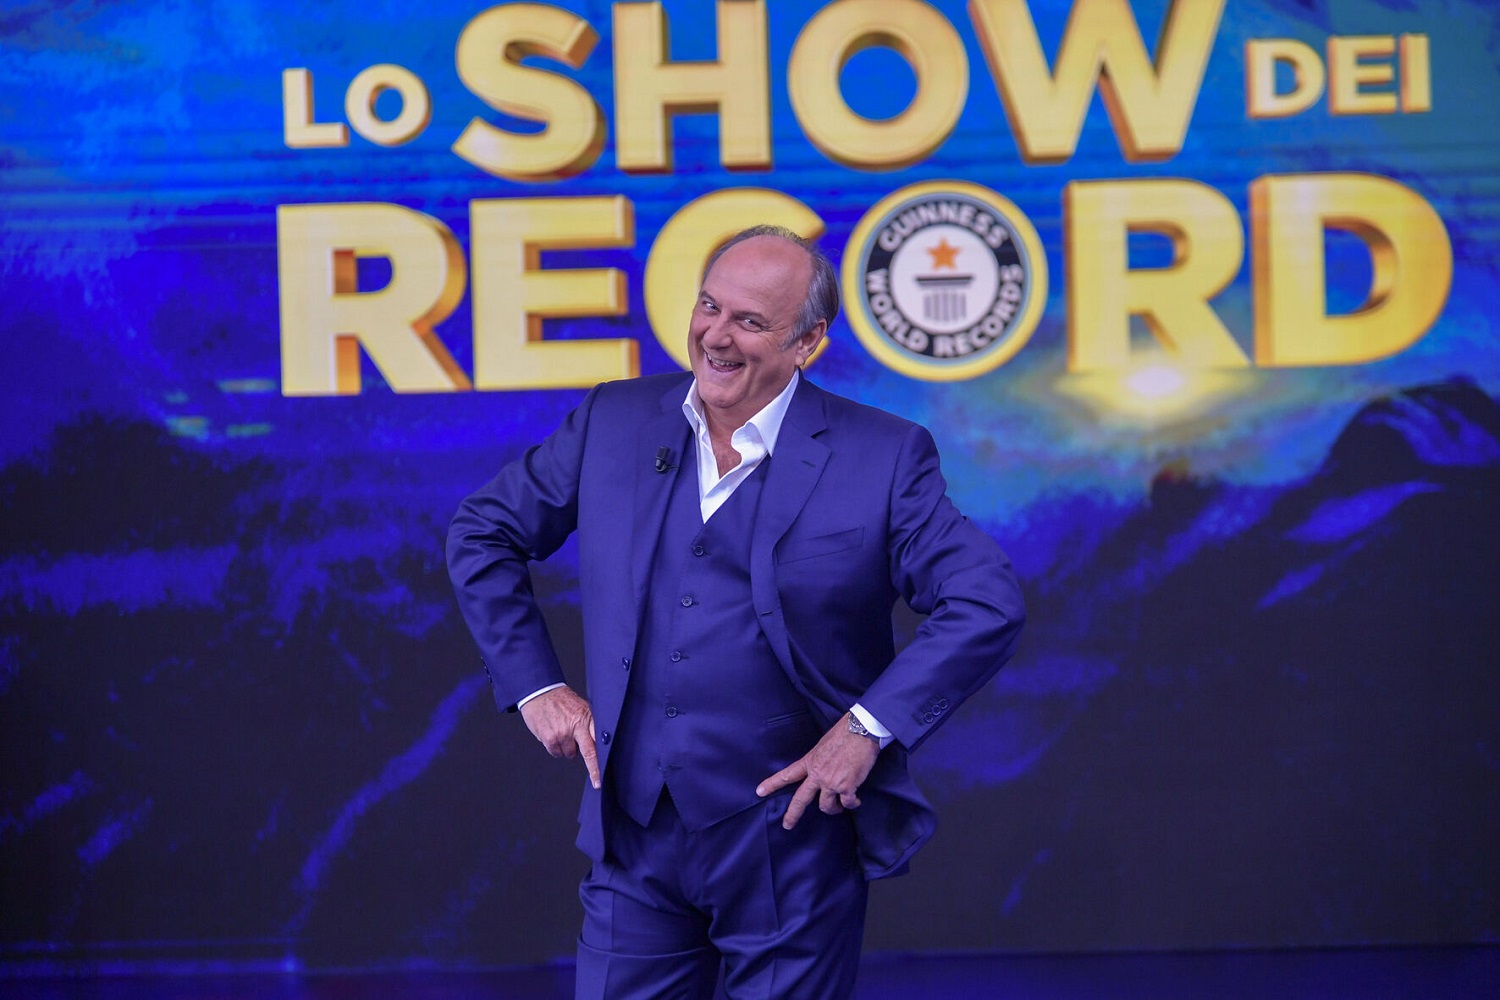 Live domenica 3 aprile 2022: Lo Show dei Record quinta puntata. Condotto da Gerry Scotti, in onda in prima serata su Canale5